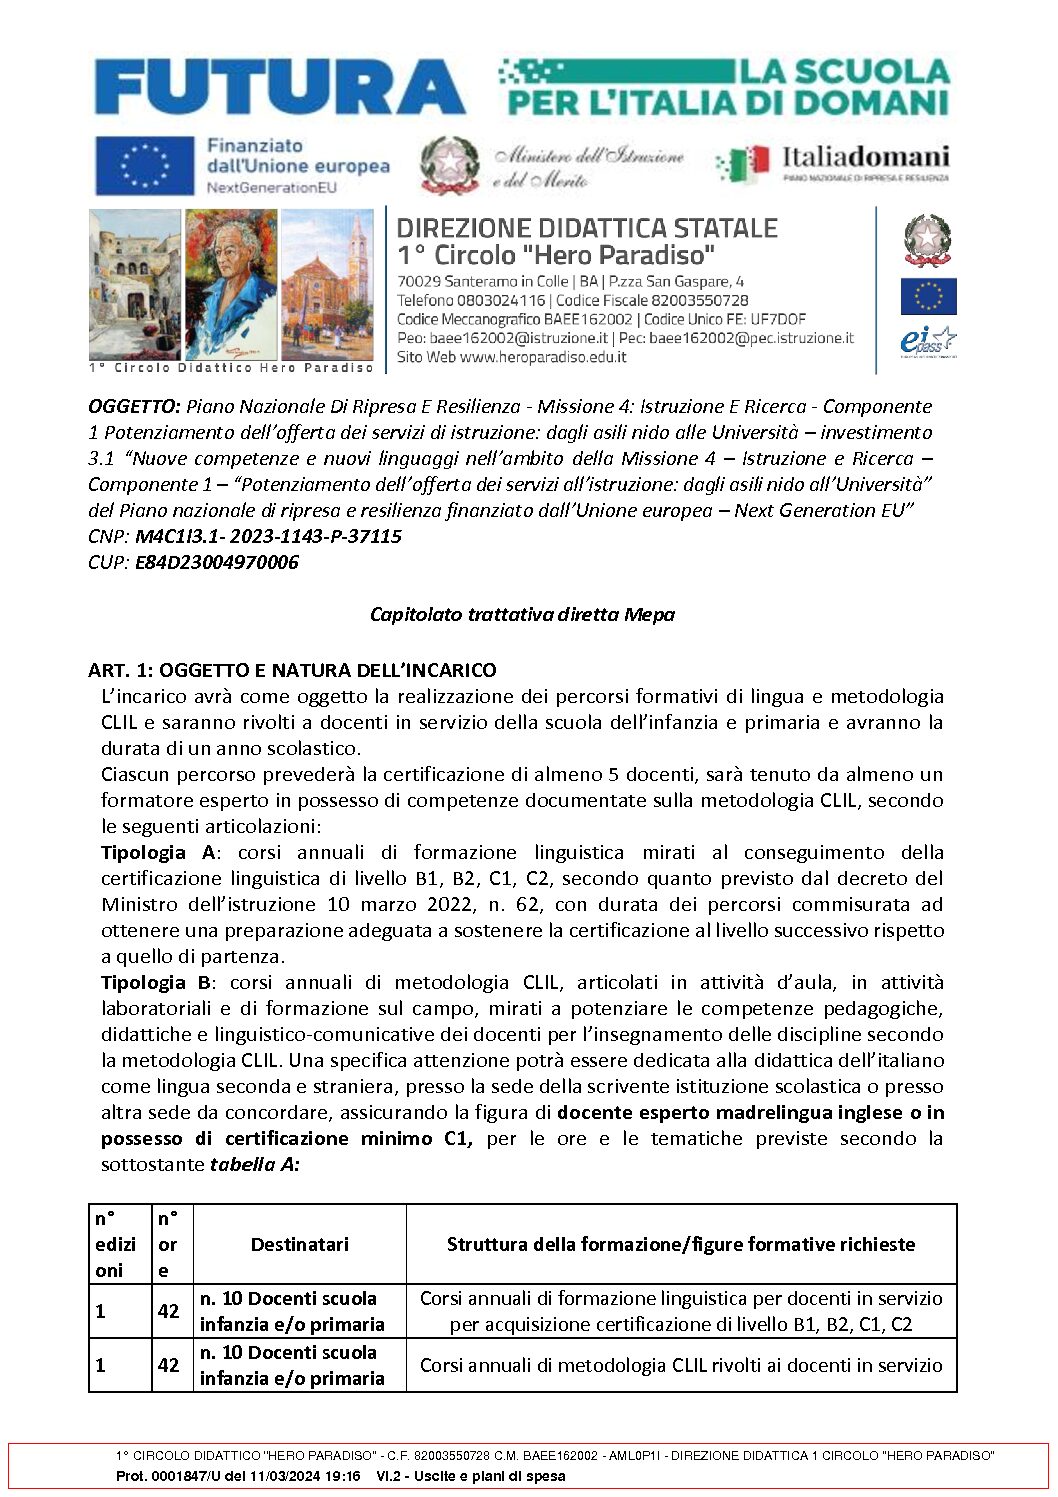 2.2_CAPITOLATO_SPECIALE_DI_GARA_OFFERTA_ECONOMICA_FISSA_IN_CASO_DI_FORMAZIONE_DOCENTI.pdf.pades